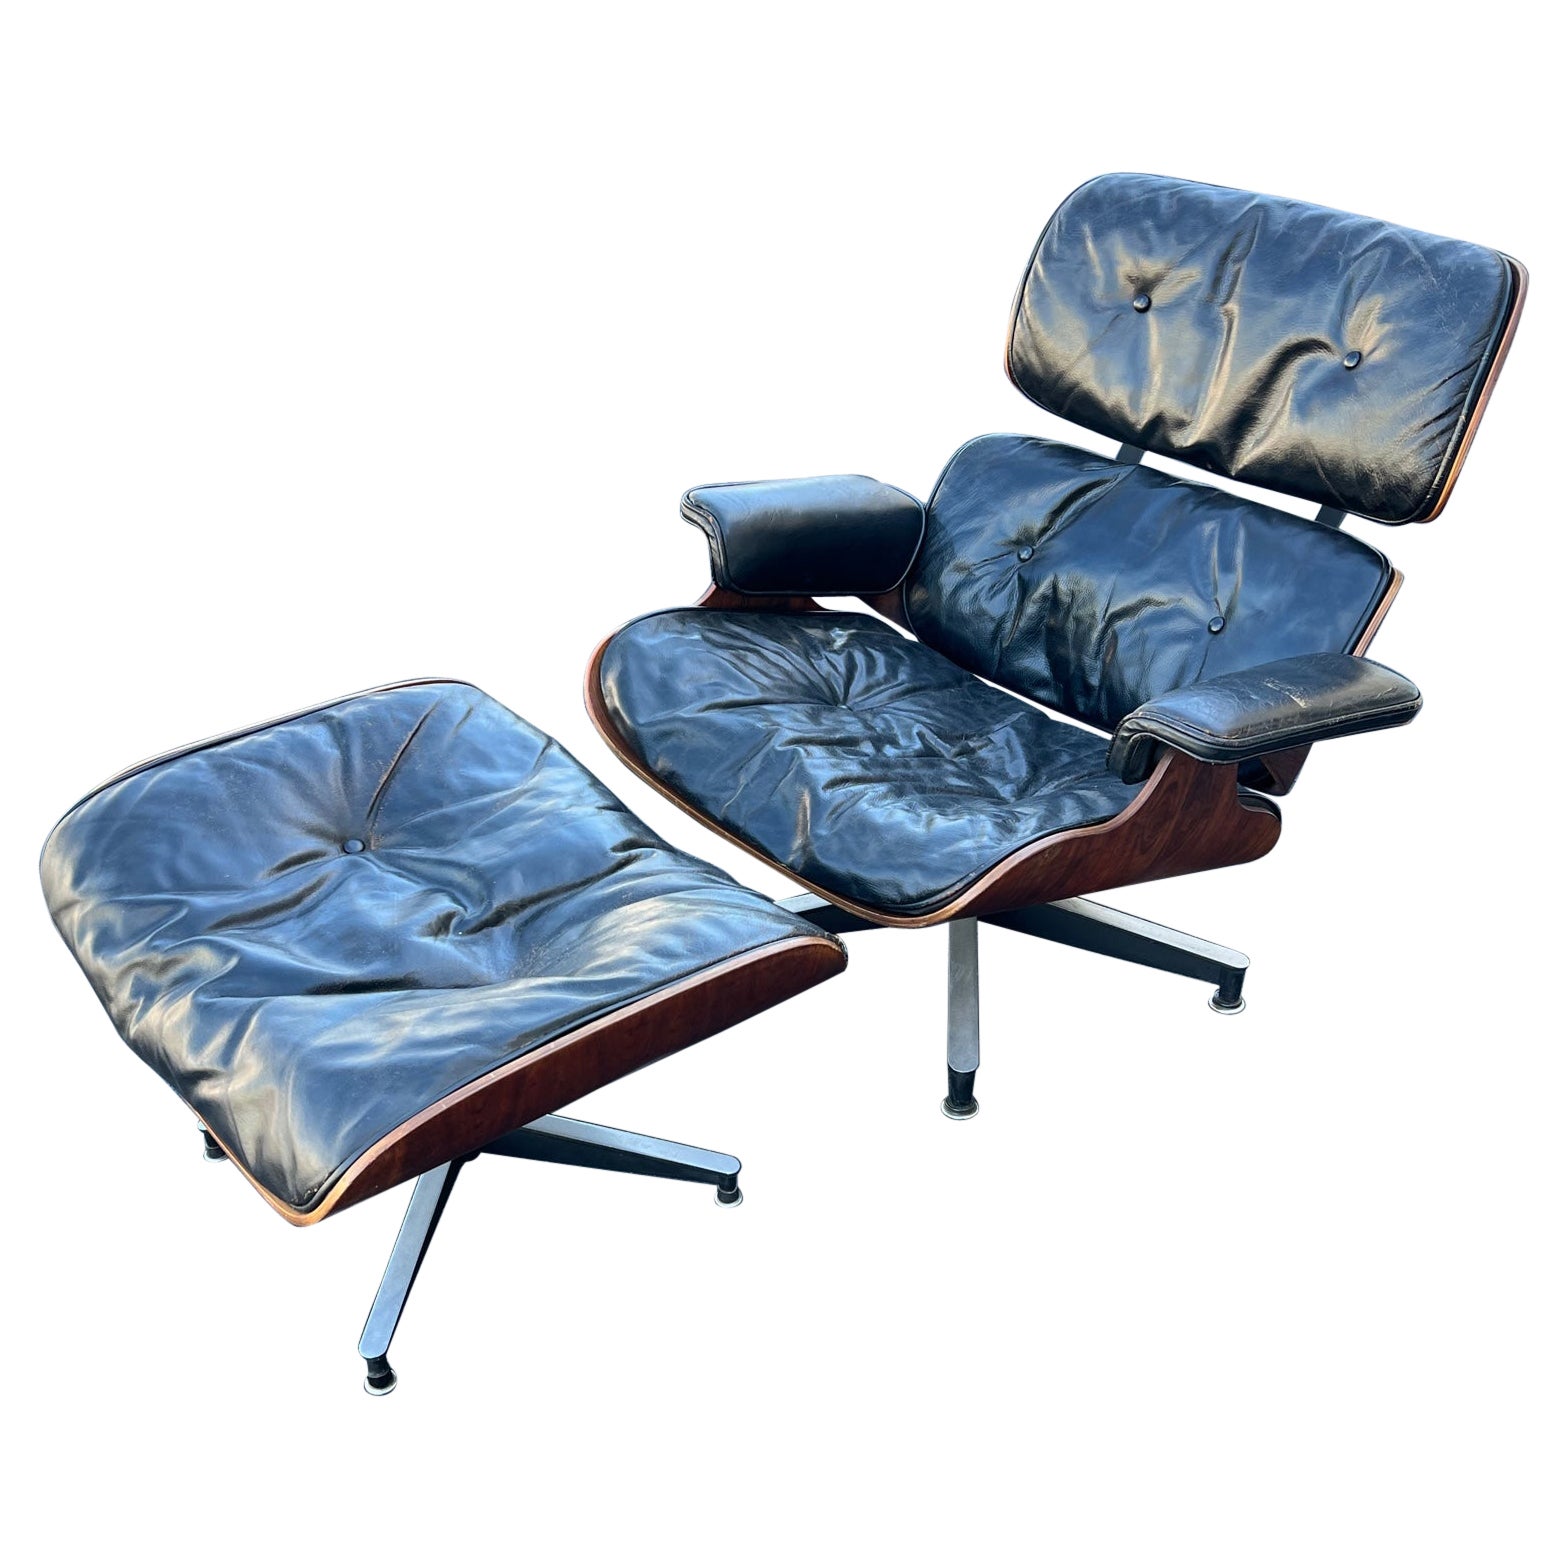 Original Charles Eames Herman Miller Lounge Chair und Ottomane 1950er Jahre